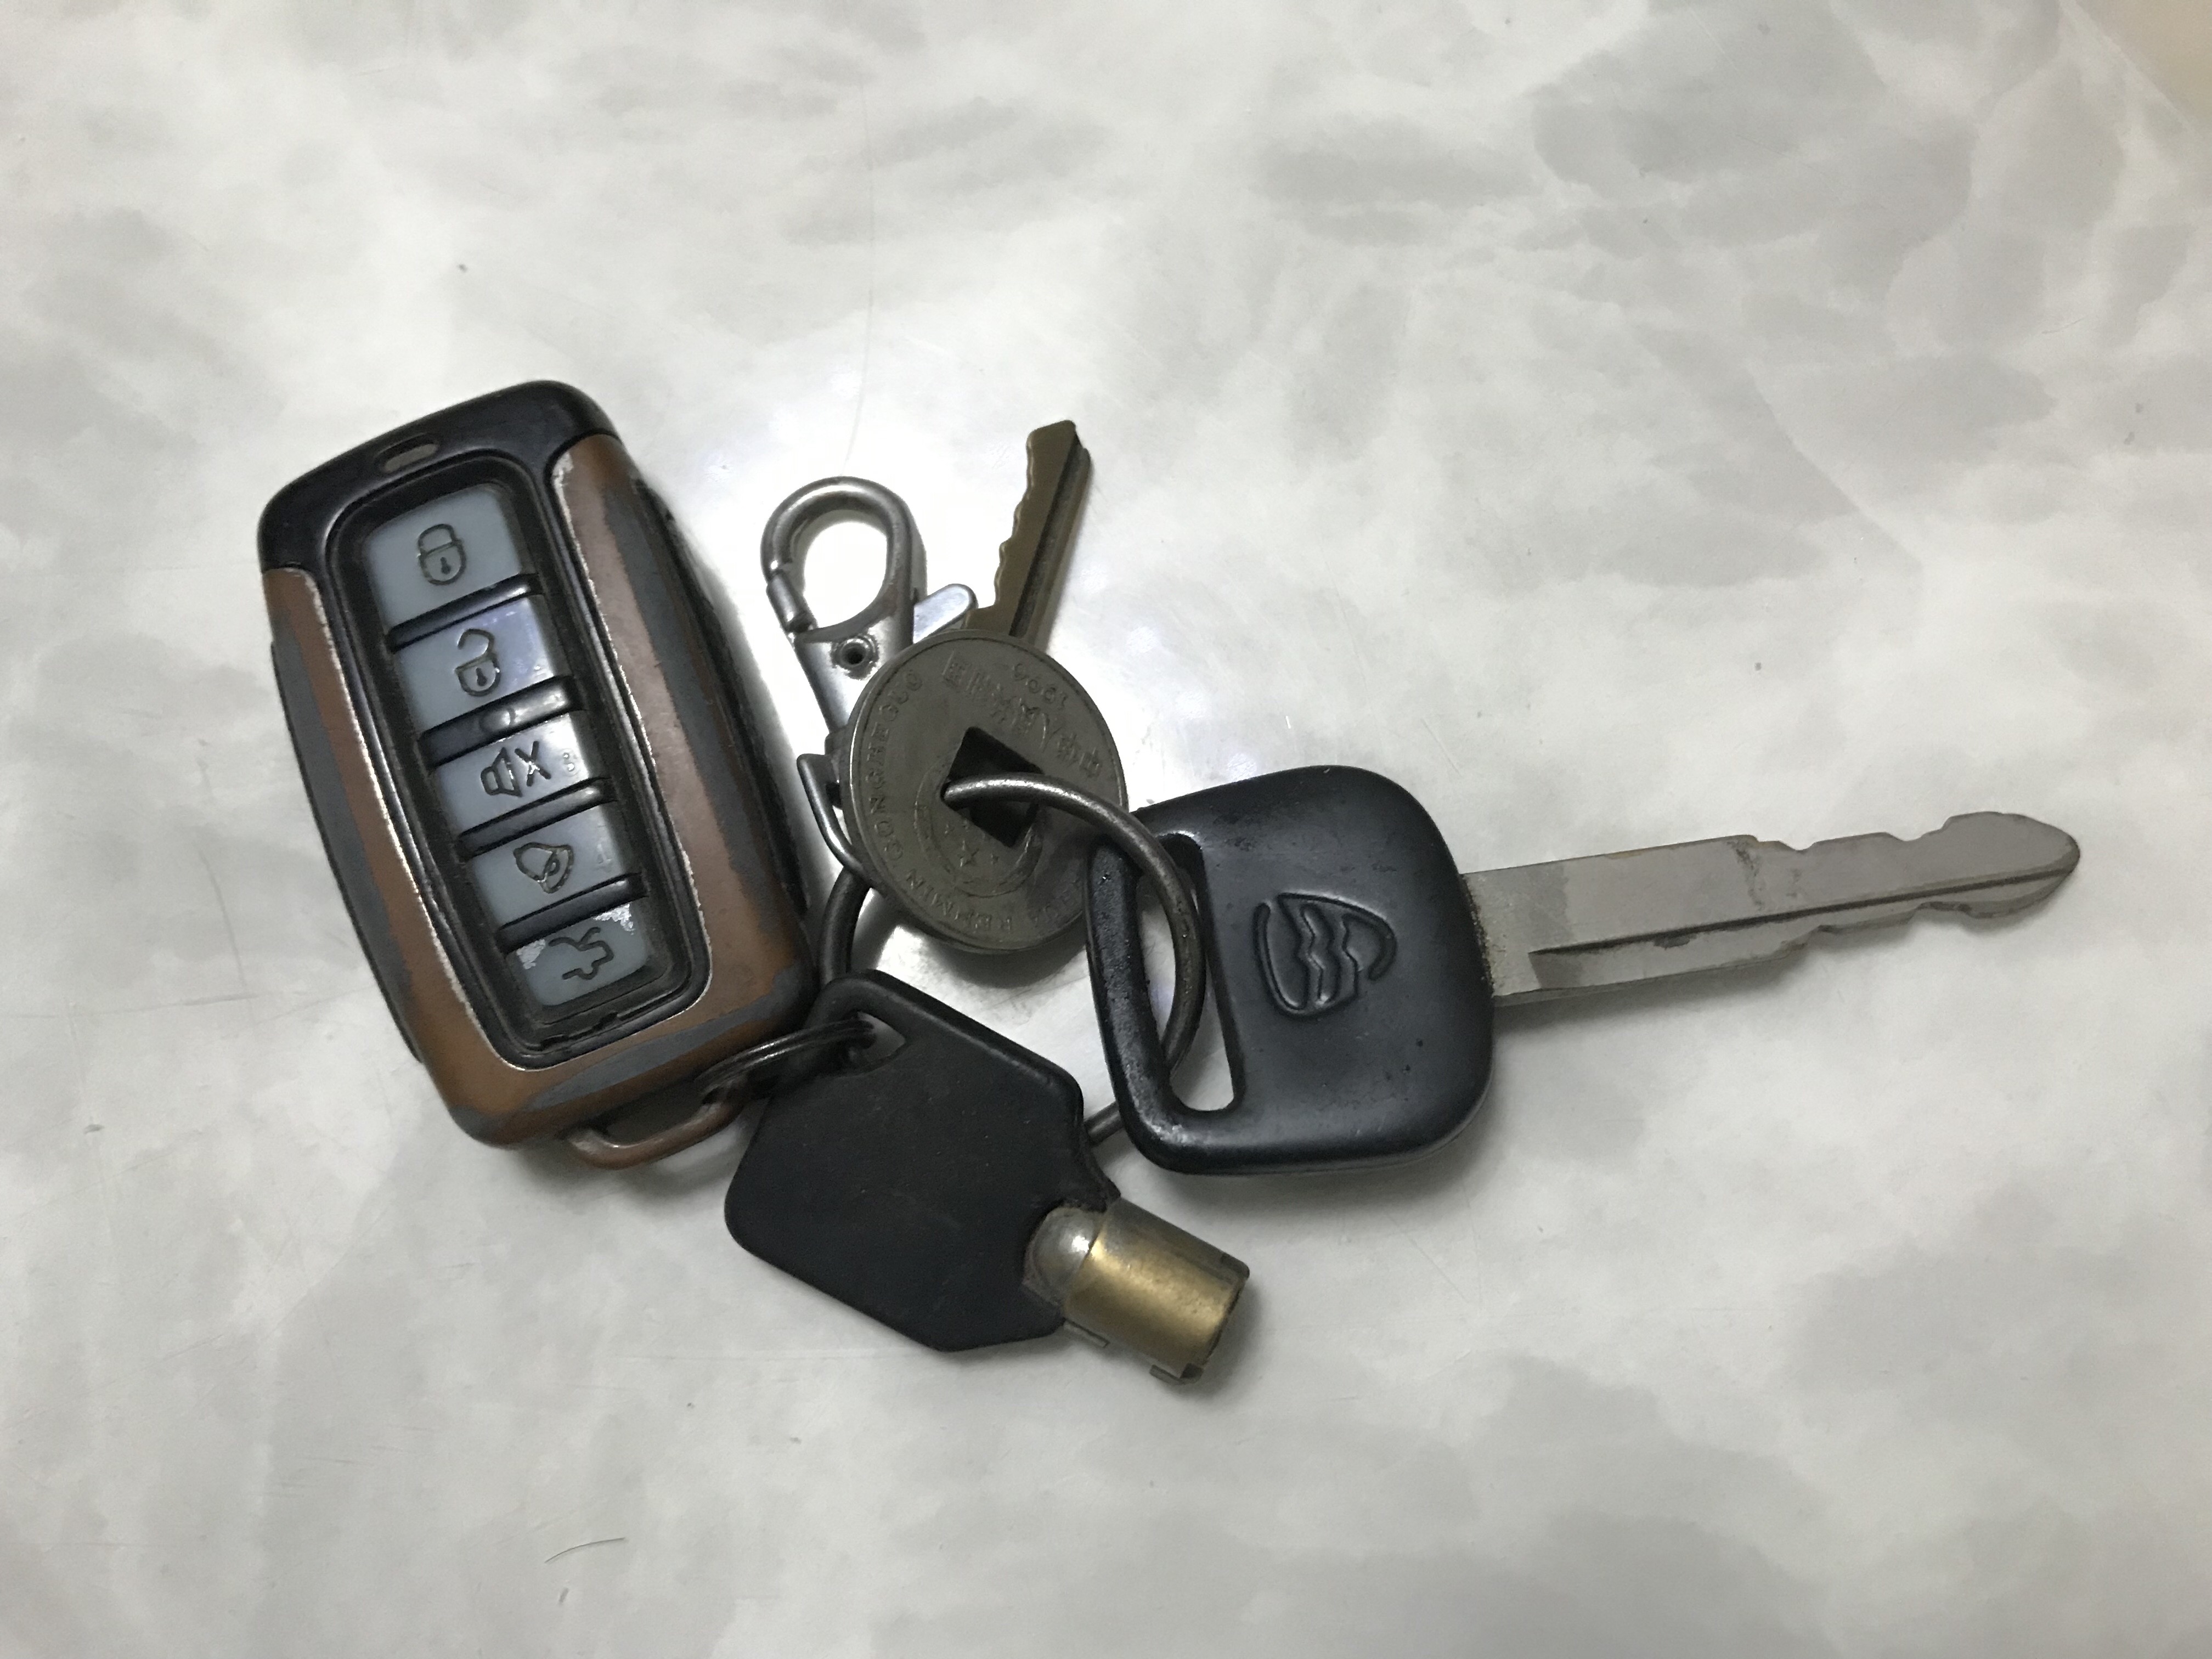 家里唯一保留的就是这把车钥匙了,遥控钥匙是后来加装的铁将军防盗锁